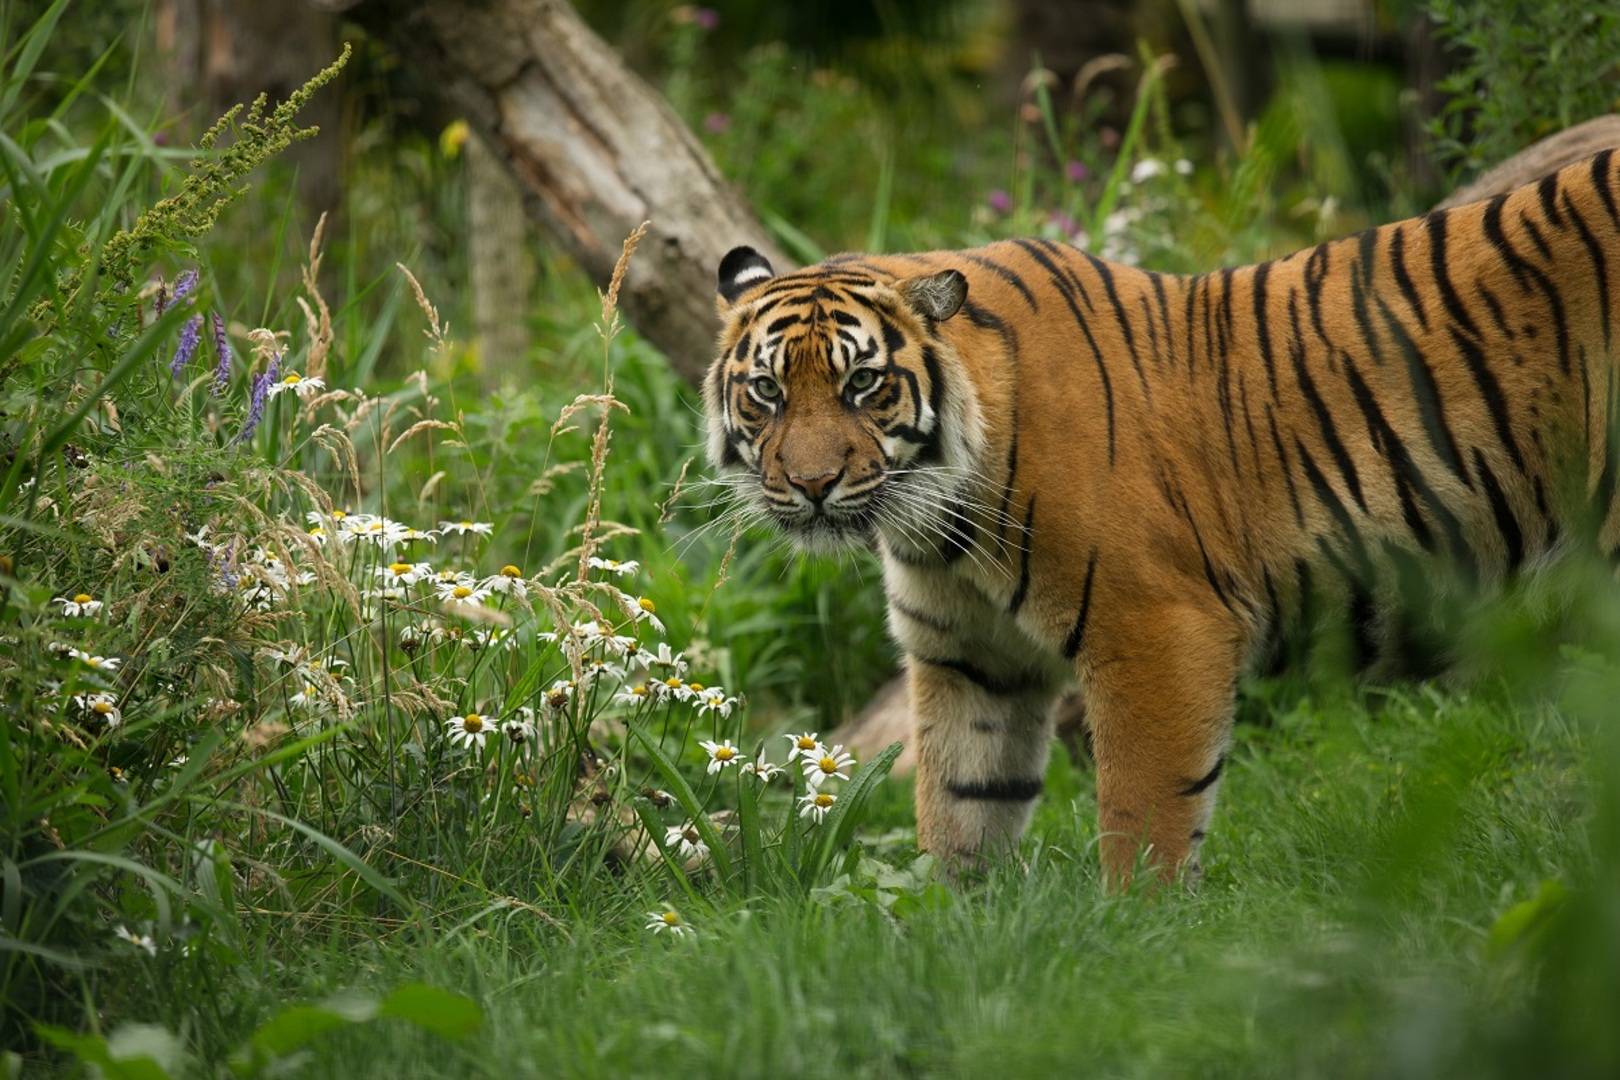 Sumatran tiger at Edinburgh Zoo,© The Royal Zoological Society of Scotland